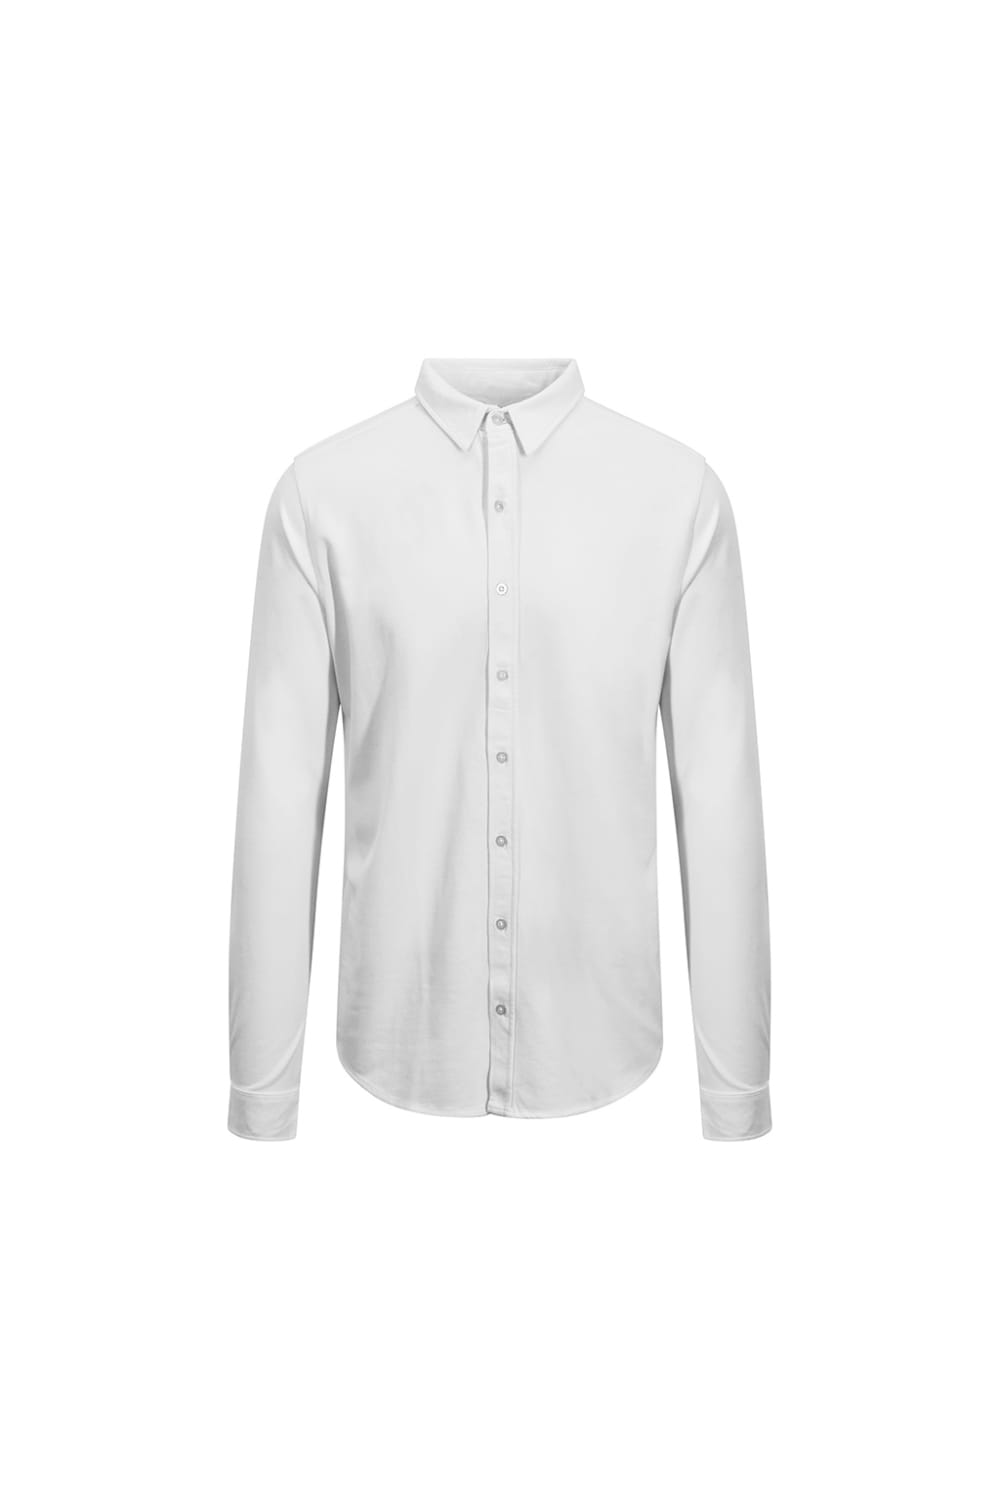 So Denim Mens Oscar Knitted Long Sleeve Shirt - White